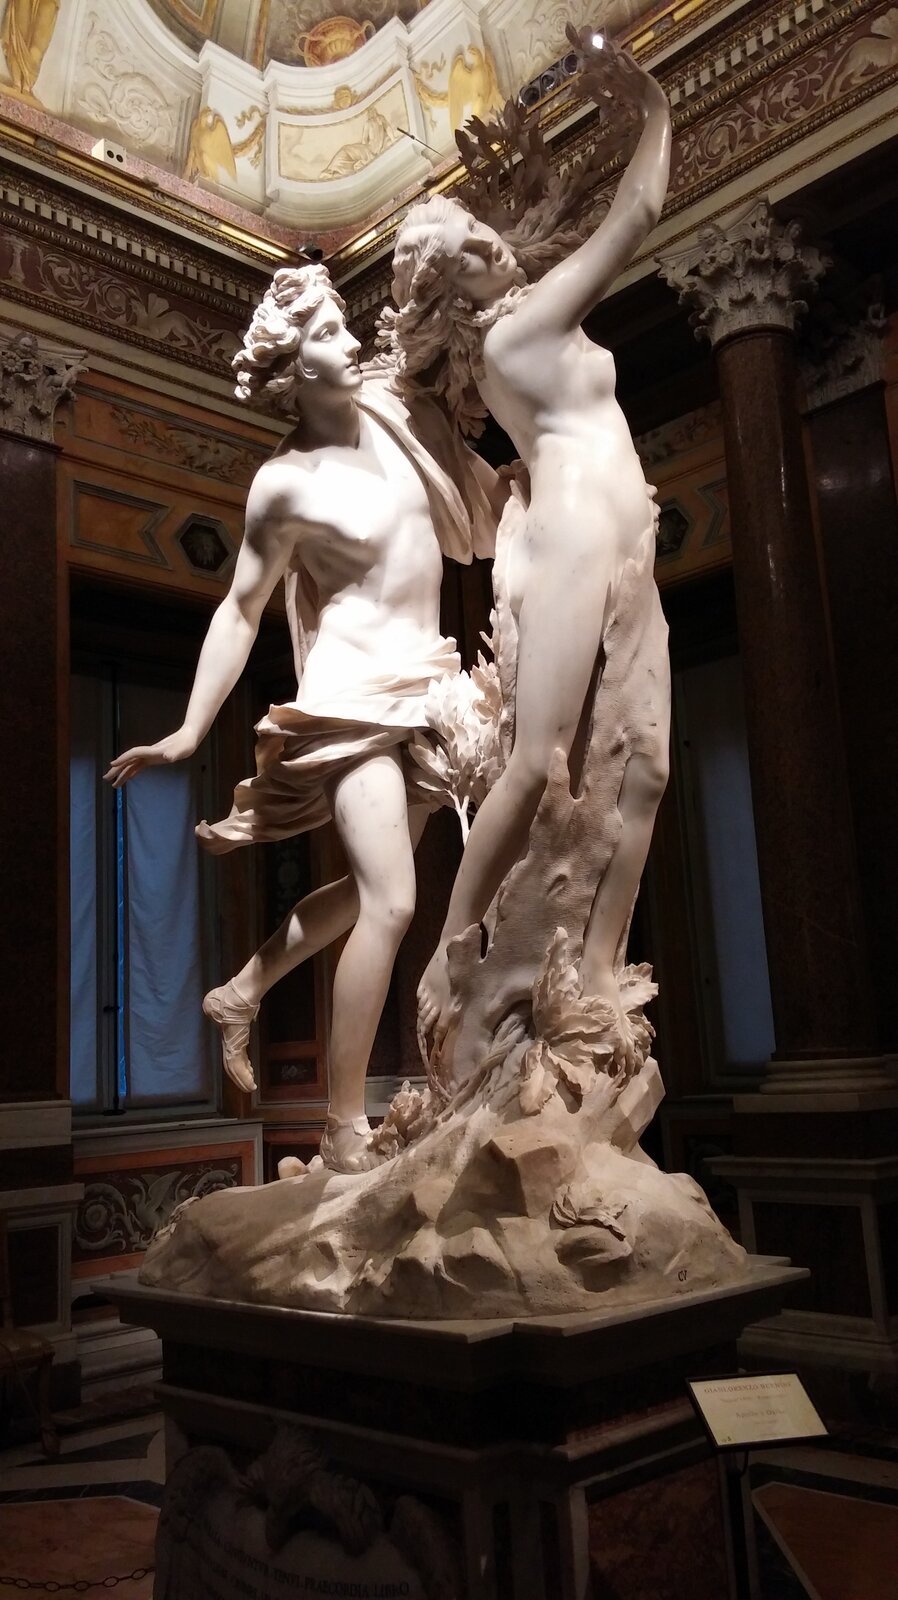 Fotografia przedstawia rzeźbę Gian Lorenzo Berninego pt. „Apollo i Dafne zmieniająca się w drzewo laurowe”. Figura składa się z dwóch części – podobizny Apolla i Dafne, która przeistacza się w drzewo. Apollo to młody szczupły mężczyzna, który ma średniej długości kręcone włosy, jest przepasany chustą, która zakrywa jego genitalia, na jego nogach widoczne są sandały. Mężczyzna z zaciekawieniem obserwuje kobietę, która zamienia się w drzewo. Dafne to naga i młoda kobieta, o długich włosach. Kobieta jest w trakcie transformacji – jej nogi zamieniają się w korę drzewną, a ręce zamieniają się w liściaste gałęzie. Kobieta jest przerażona, na jej twarzy widoczny jest ból i cierpienie. Figura Apolla i Dafne została wykonana z jasnego kamienia, i znajduje się w Sali wystawowej.